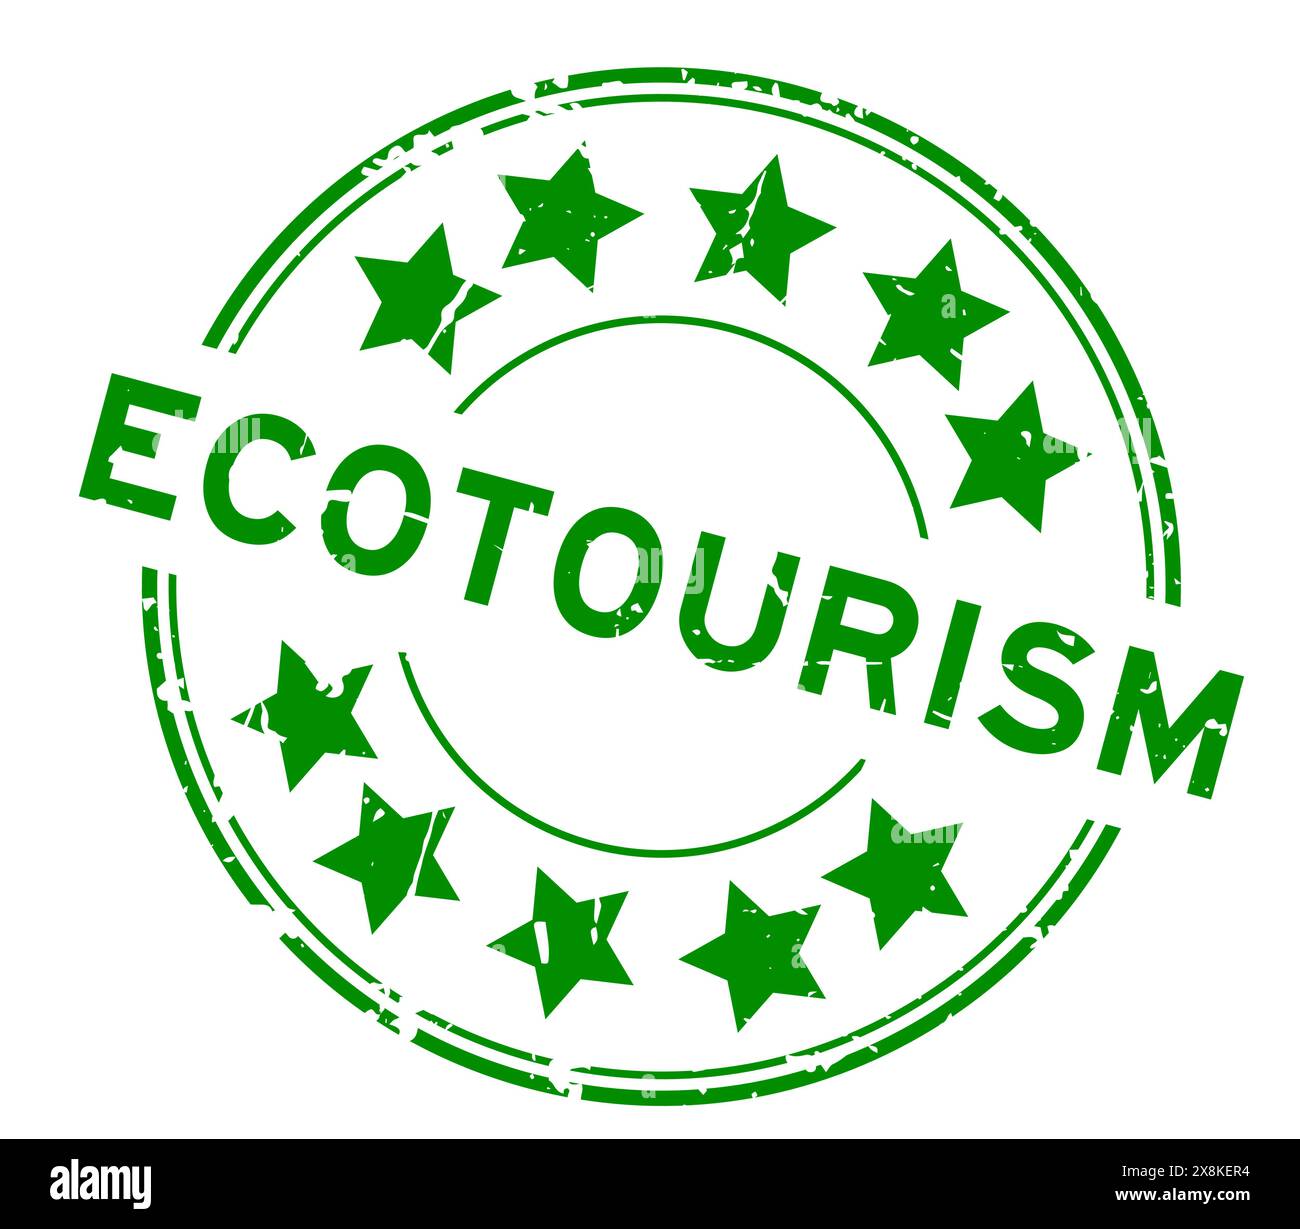 Parola verde grunge ecoturismo con icona a stella timbro rotondo in gomma su sfondo bianco Illustrazione Vettoriale